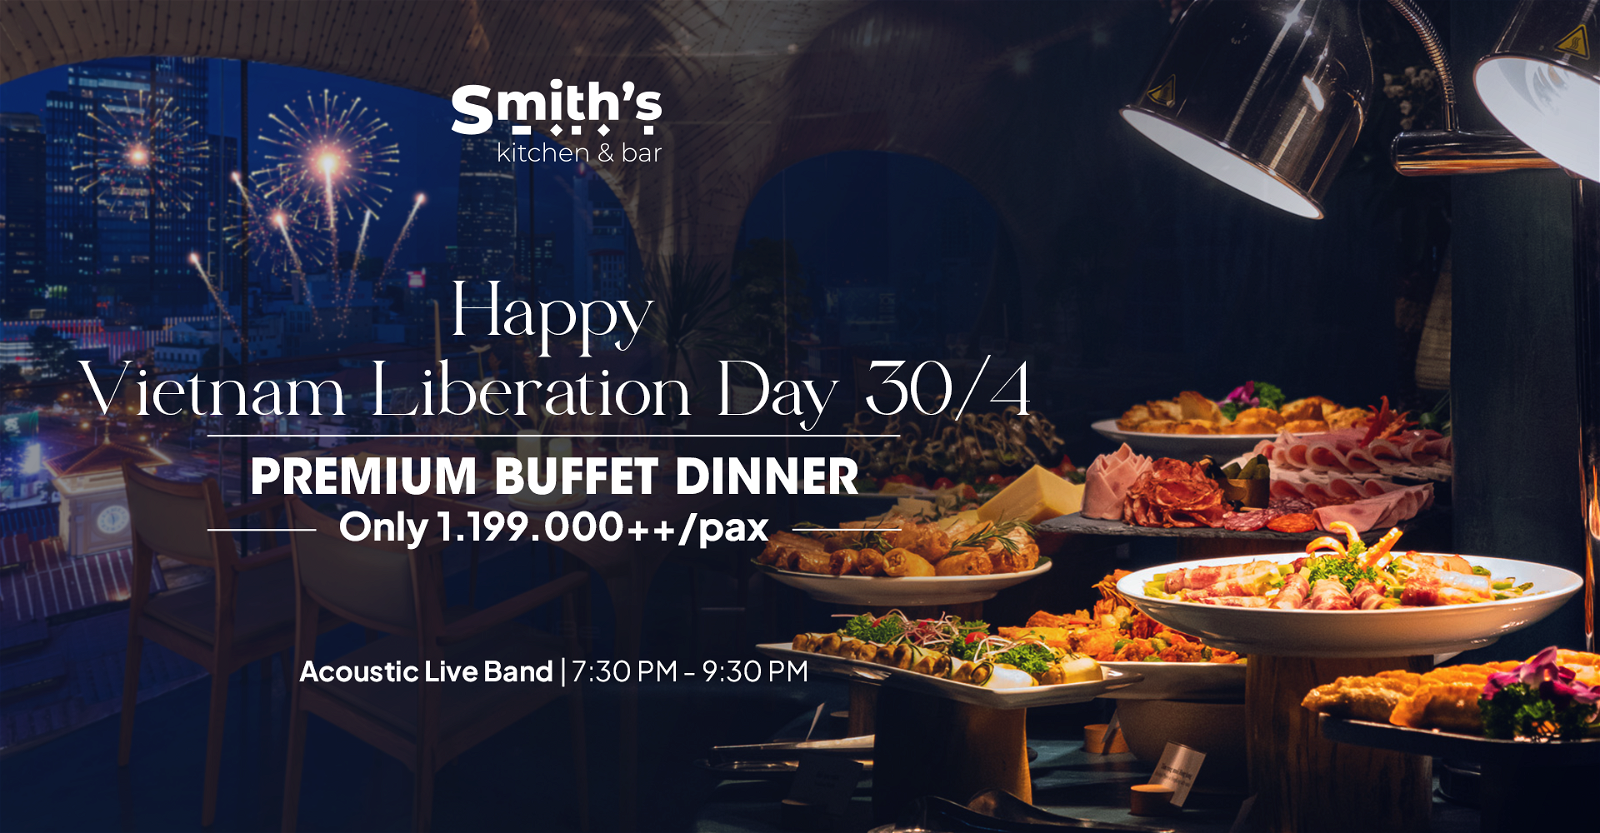 Silverland Ben Thanh – Happy Vietnam Liberation Day | Smith’s Kitchen & Bar